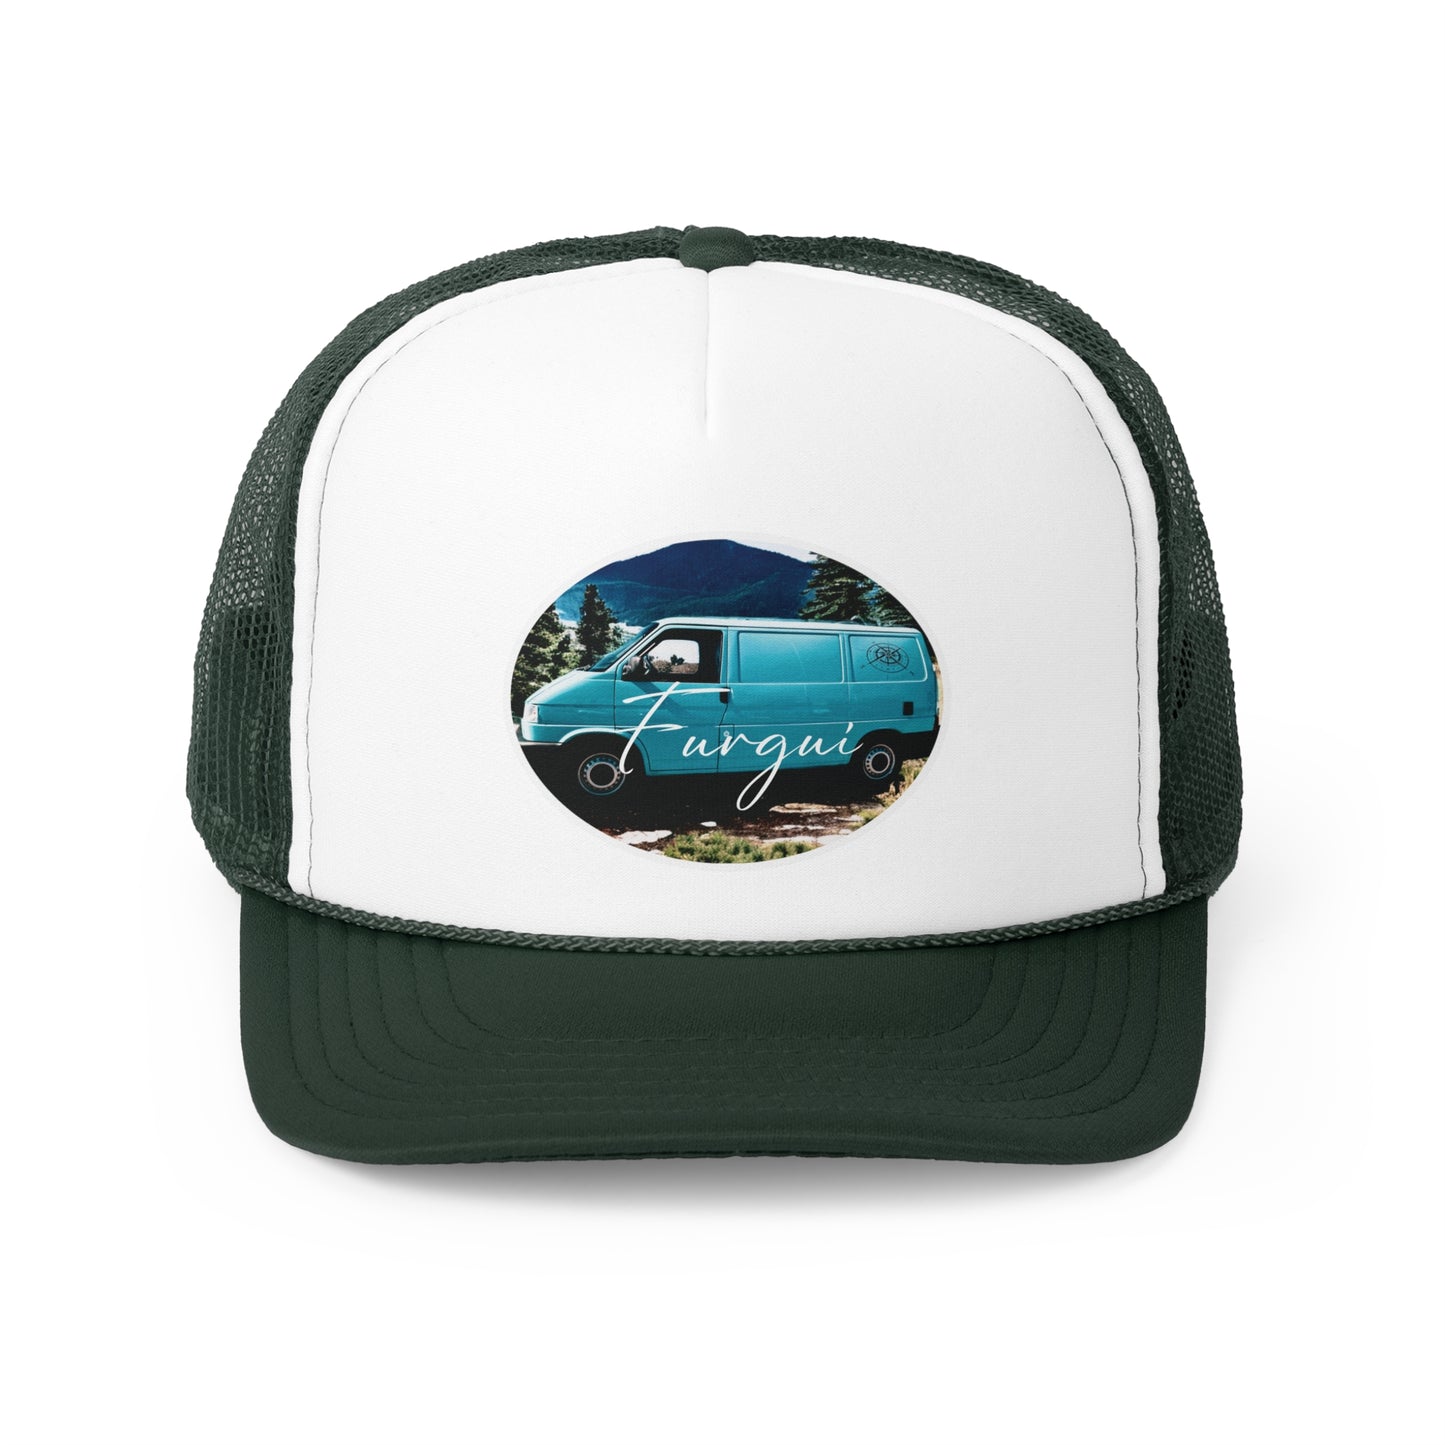 Gorra personalizada de furgoneta, gorra de casa rodante personalizada, gorra caravana personalizada, sombrero de camioneta personalizada.